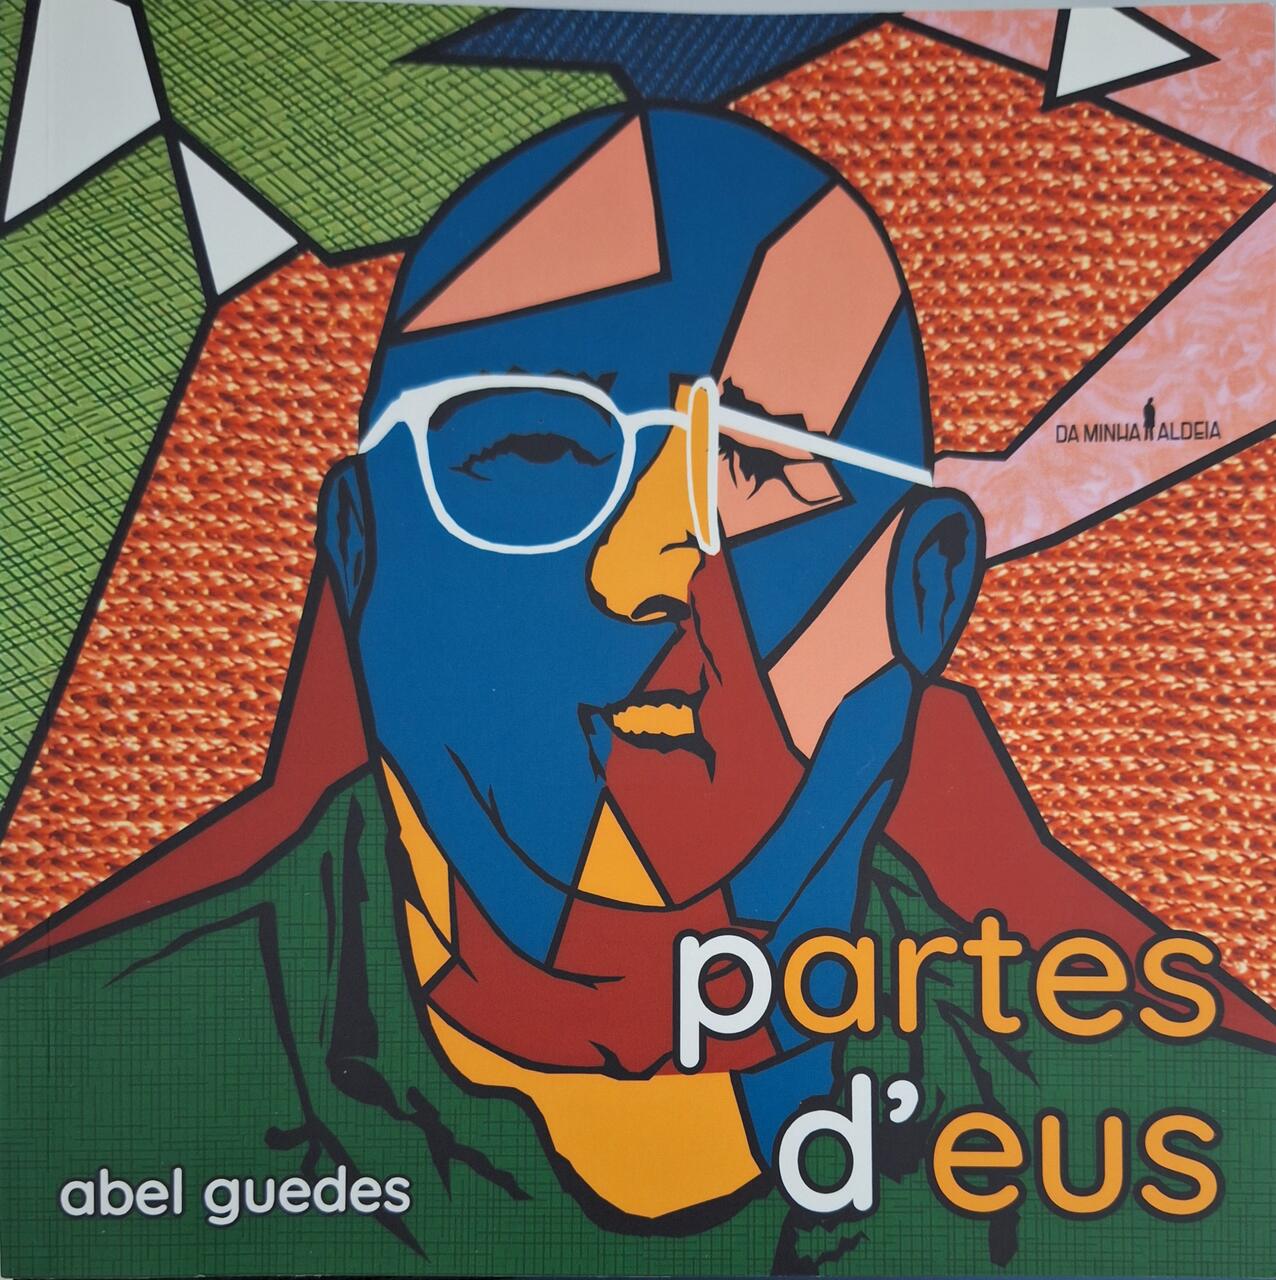 Capa do livro Partes d'eus, de Abel Guedes, pela Editora Na minha aldeia